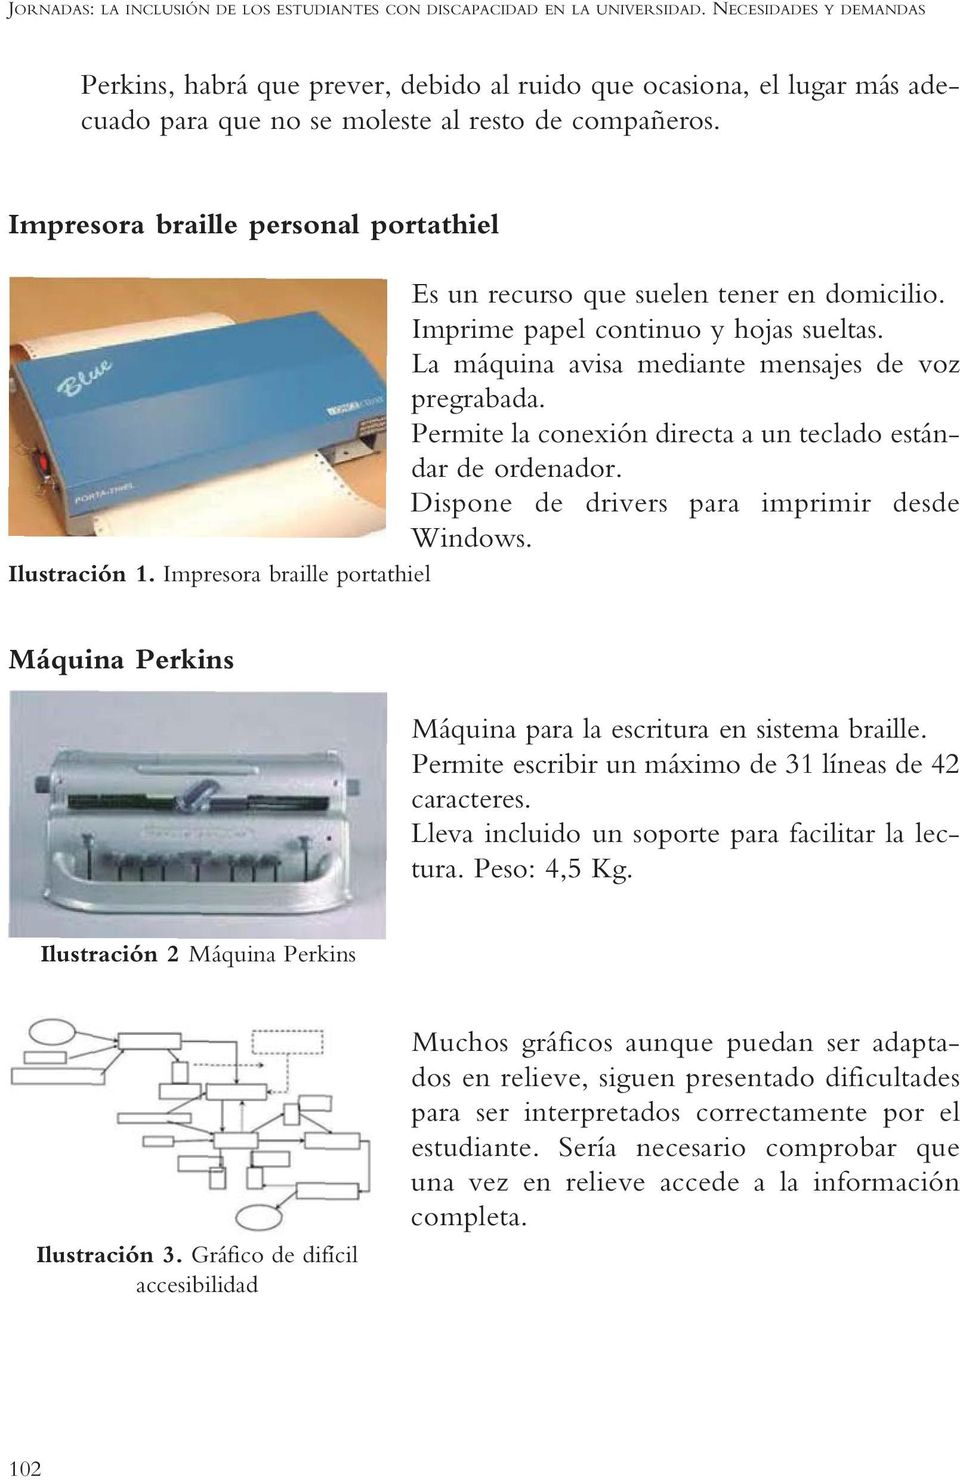 Impresora braille personal portathiel Es un recurso que suelen tener en domicilio. Imprime papel continuo y hojas sueltas. La máquina avisa mediante mensajes de voz pregrabada.